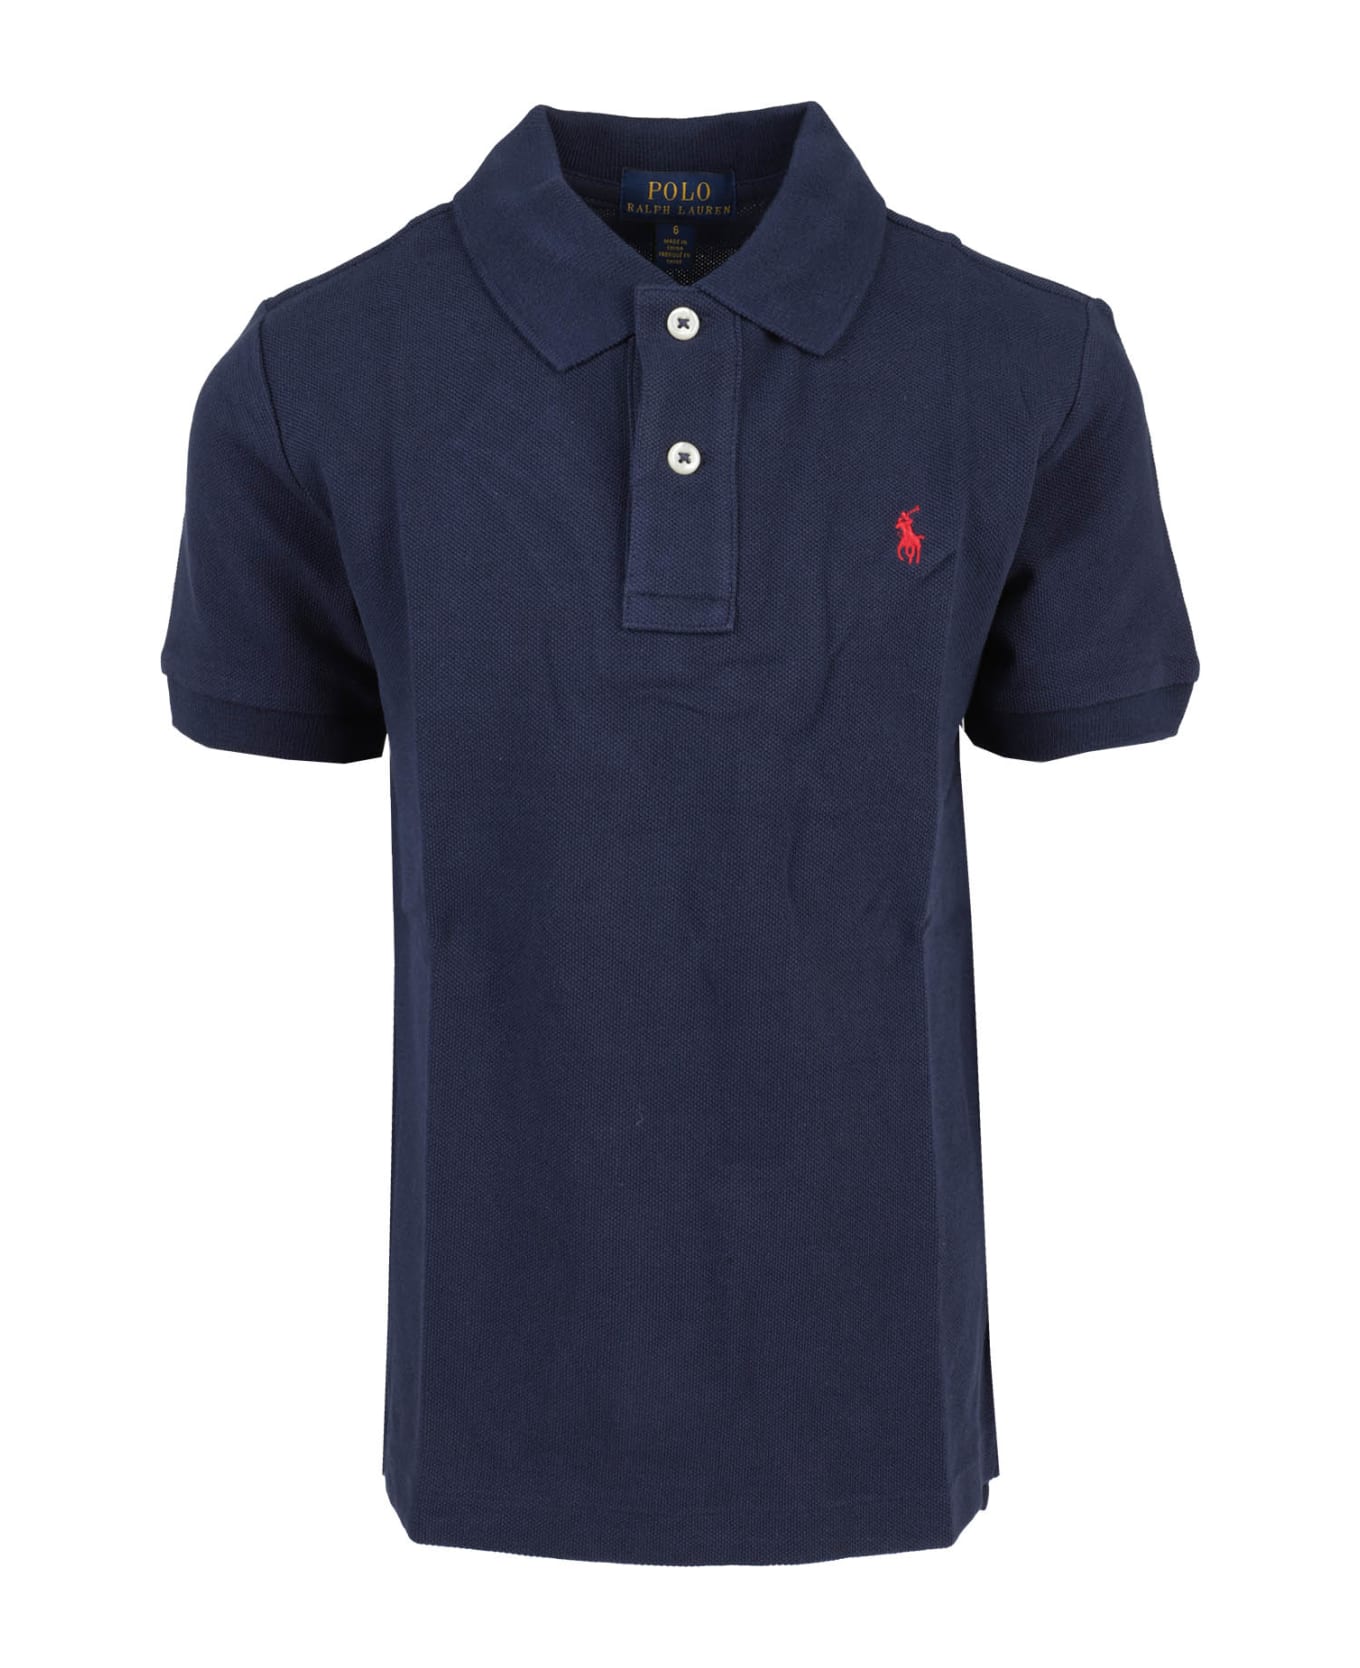 Polo Ralph Lauren Polo Shirt - Navy